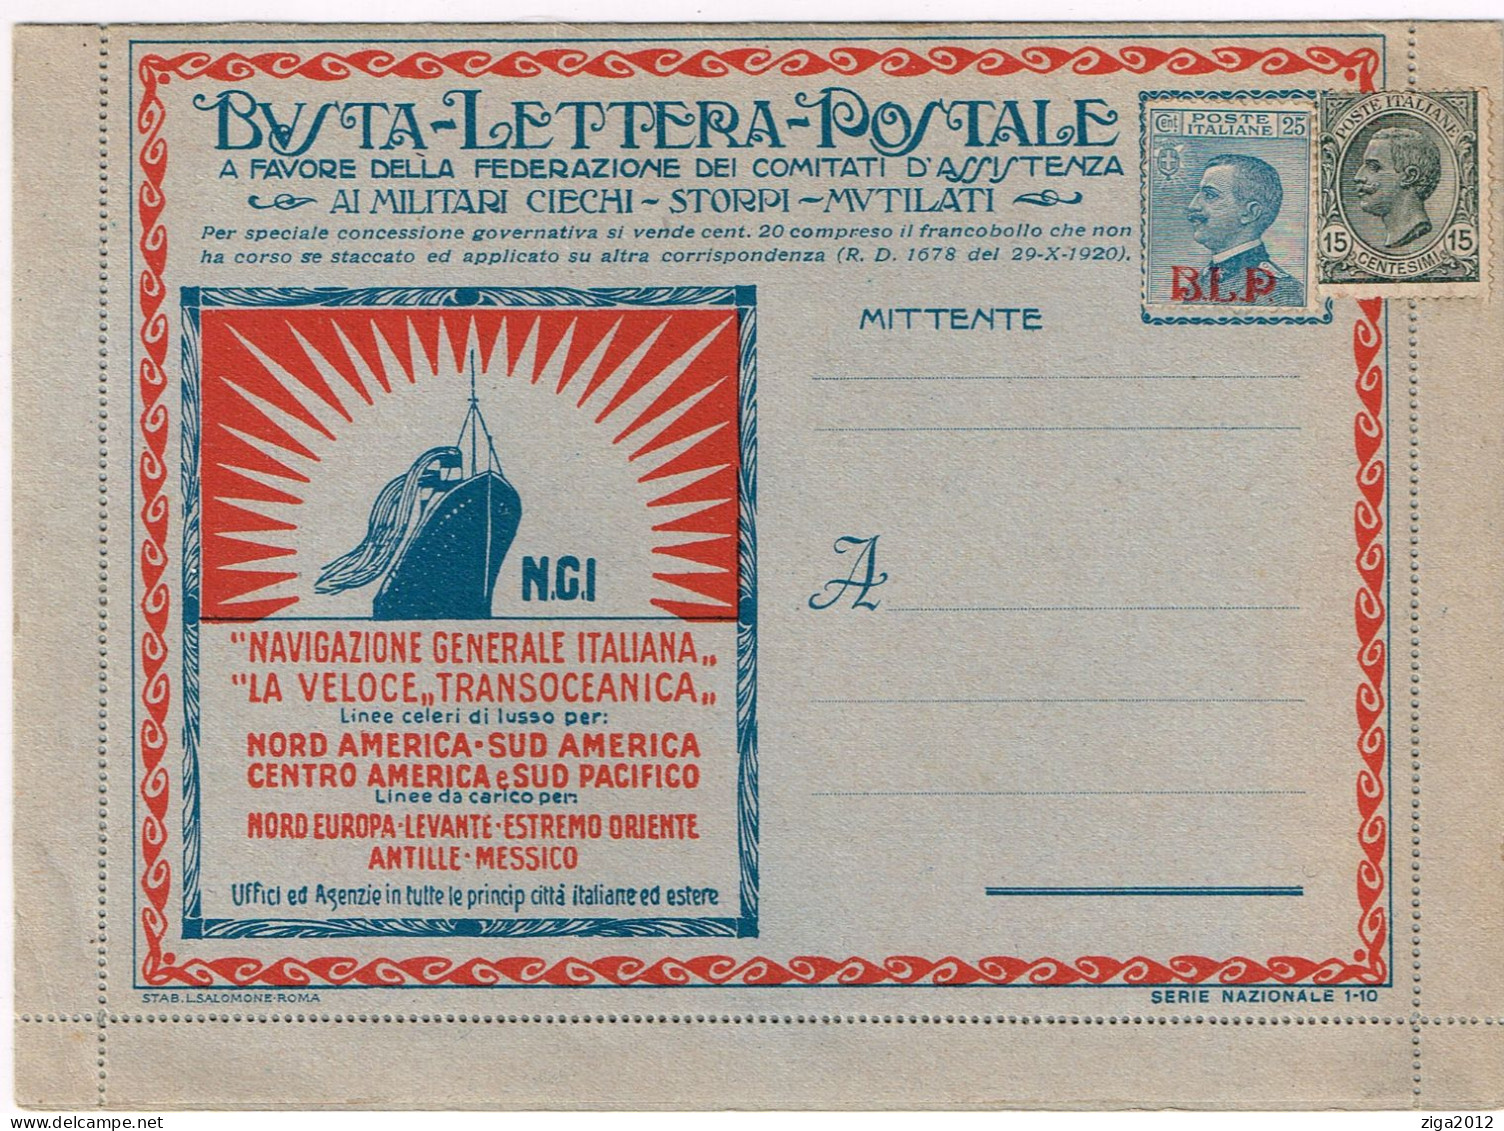 ITALY 1921 B.L.P. BUSTA LETTERA POSTALE CON C.25 I° TIPO NUOVA E COMPLETA - Pubblicitari